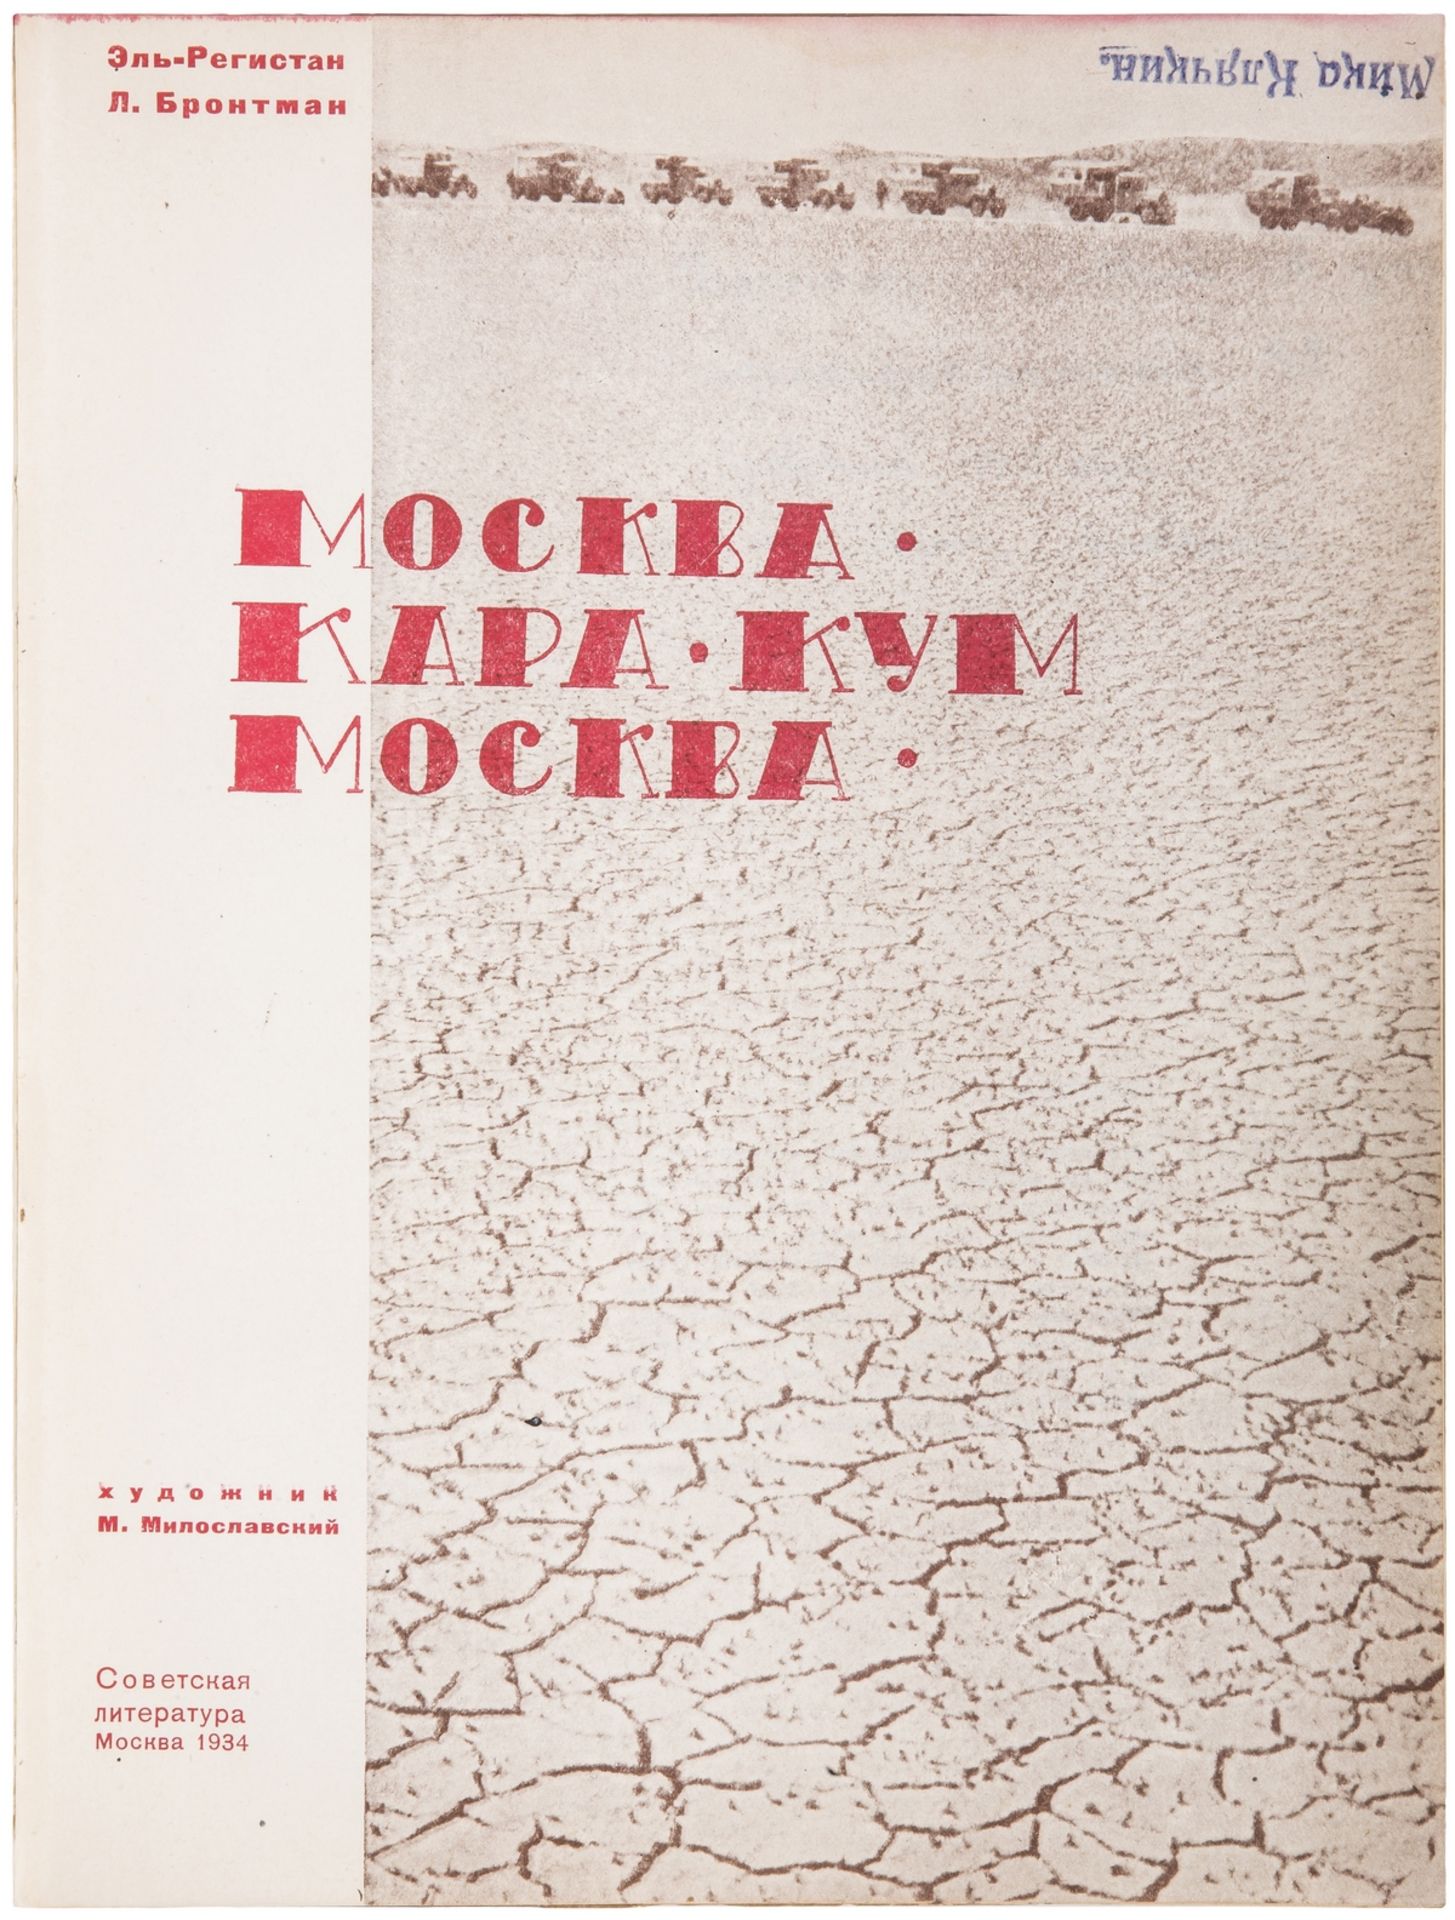 [Miloslavsky, M. design. Soviet]. El-Registan, G.A., Brontman, L.K. Moscow â€“ Karakum â€“ Moscow : - Image 6 of 10